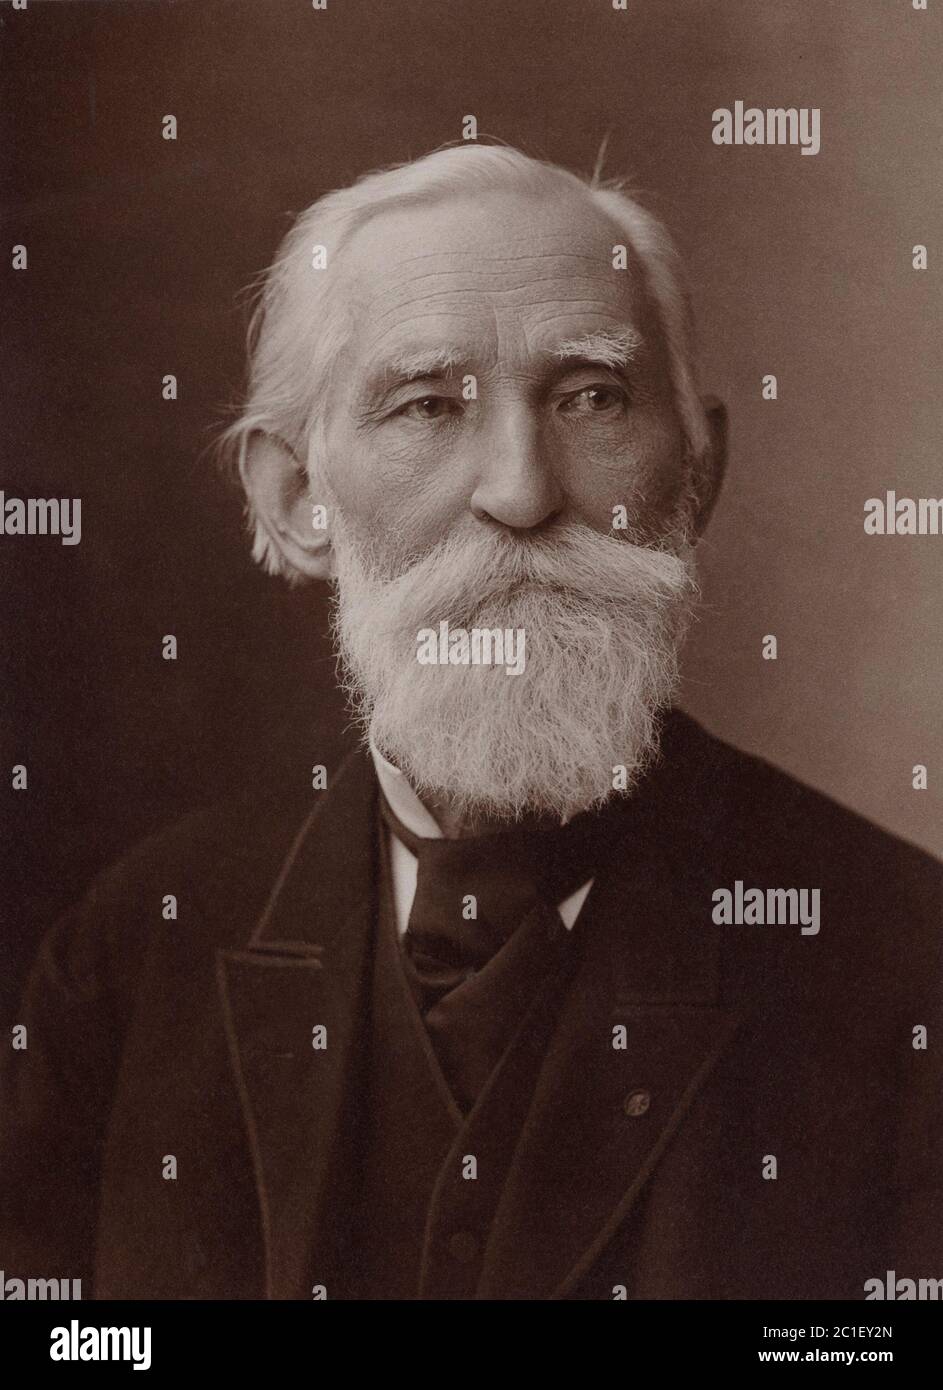 Pafnuty Lwowitsch Tschebyschew (1821 – 1894) war ein berühmter russischer Mathematiker. Sein Name kann alternativ transliteriert werden als Tschebysheff, Tschebychov, Che Stockfoto